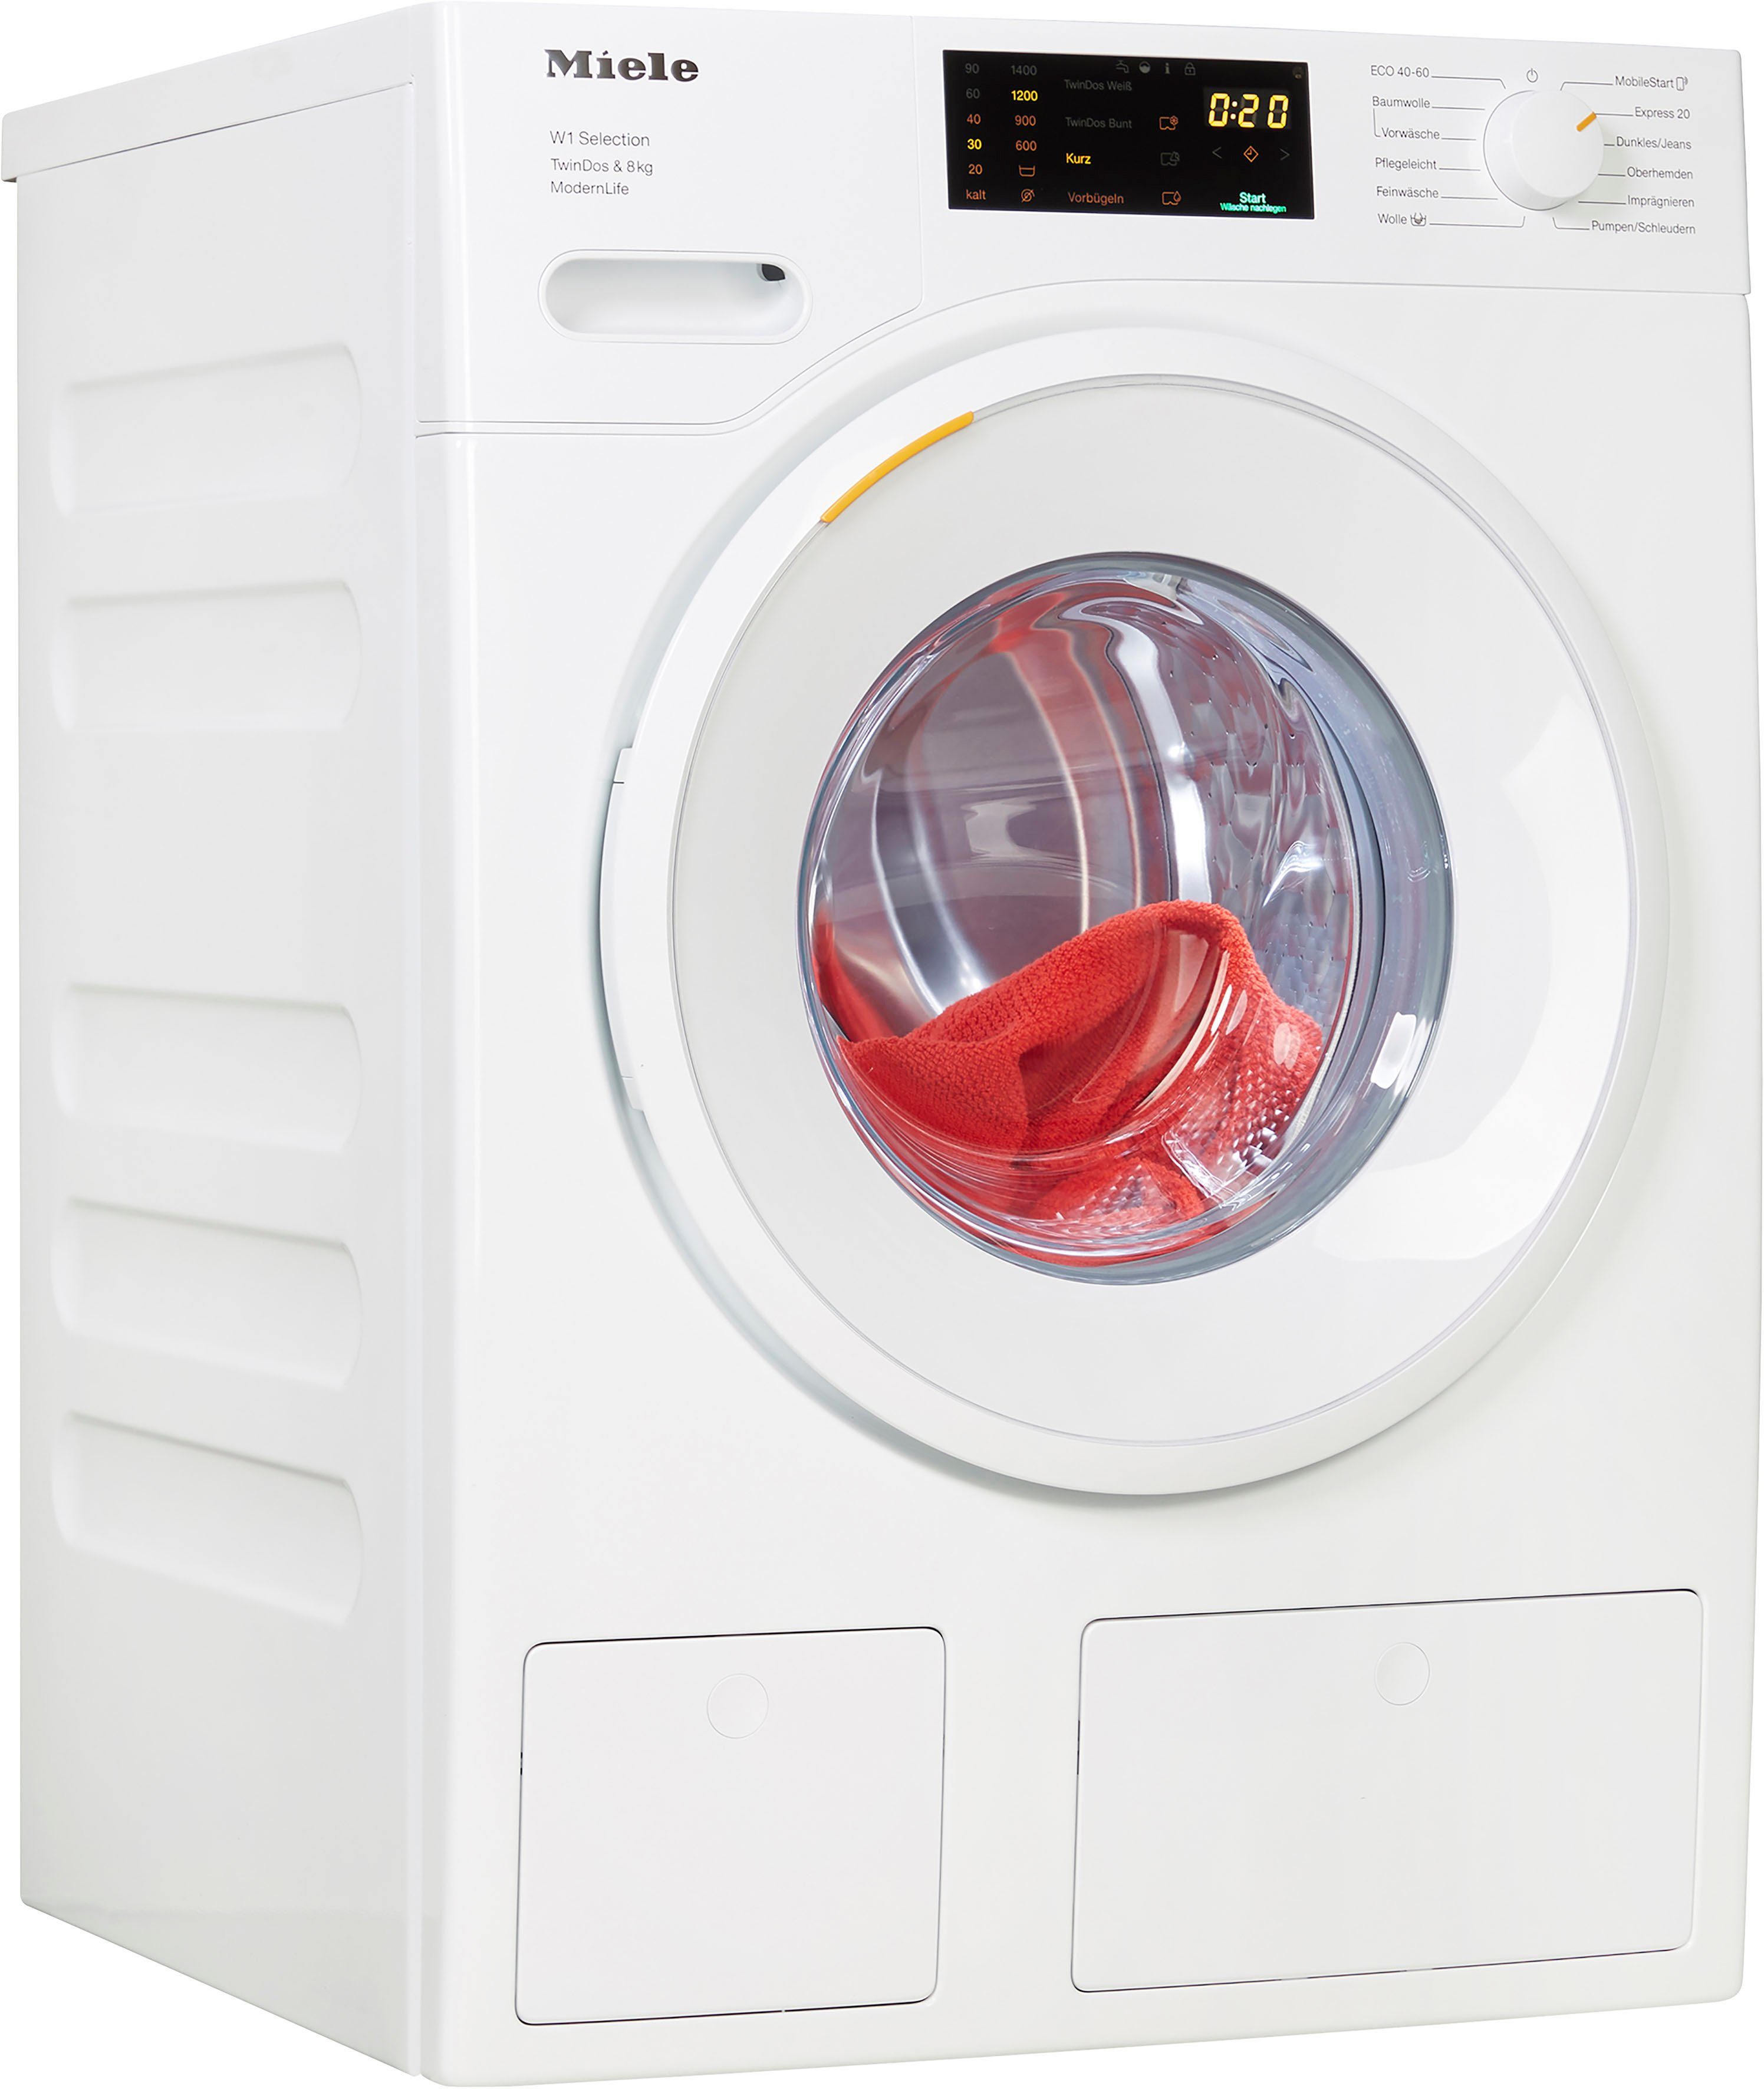 Miele U/min, WCS Waschmitteldosierung TDos&8kg, 1400 zur Waschmaschine ModernLife TwinDos WSD663 kg, 8 automatischen